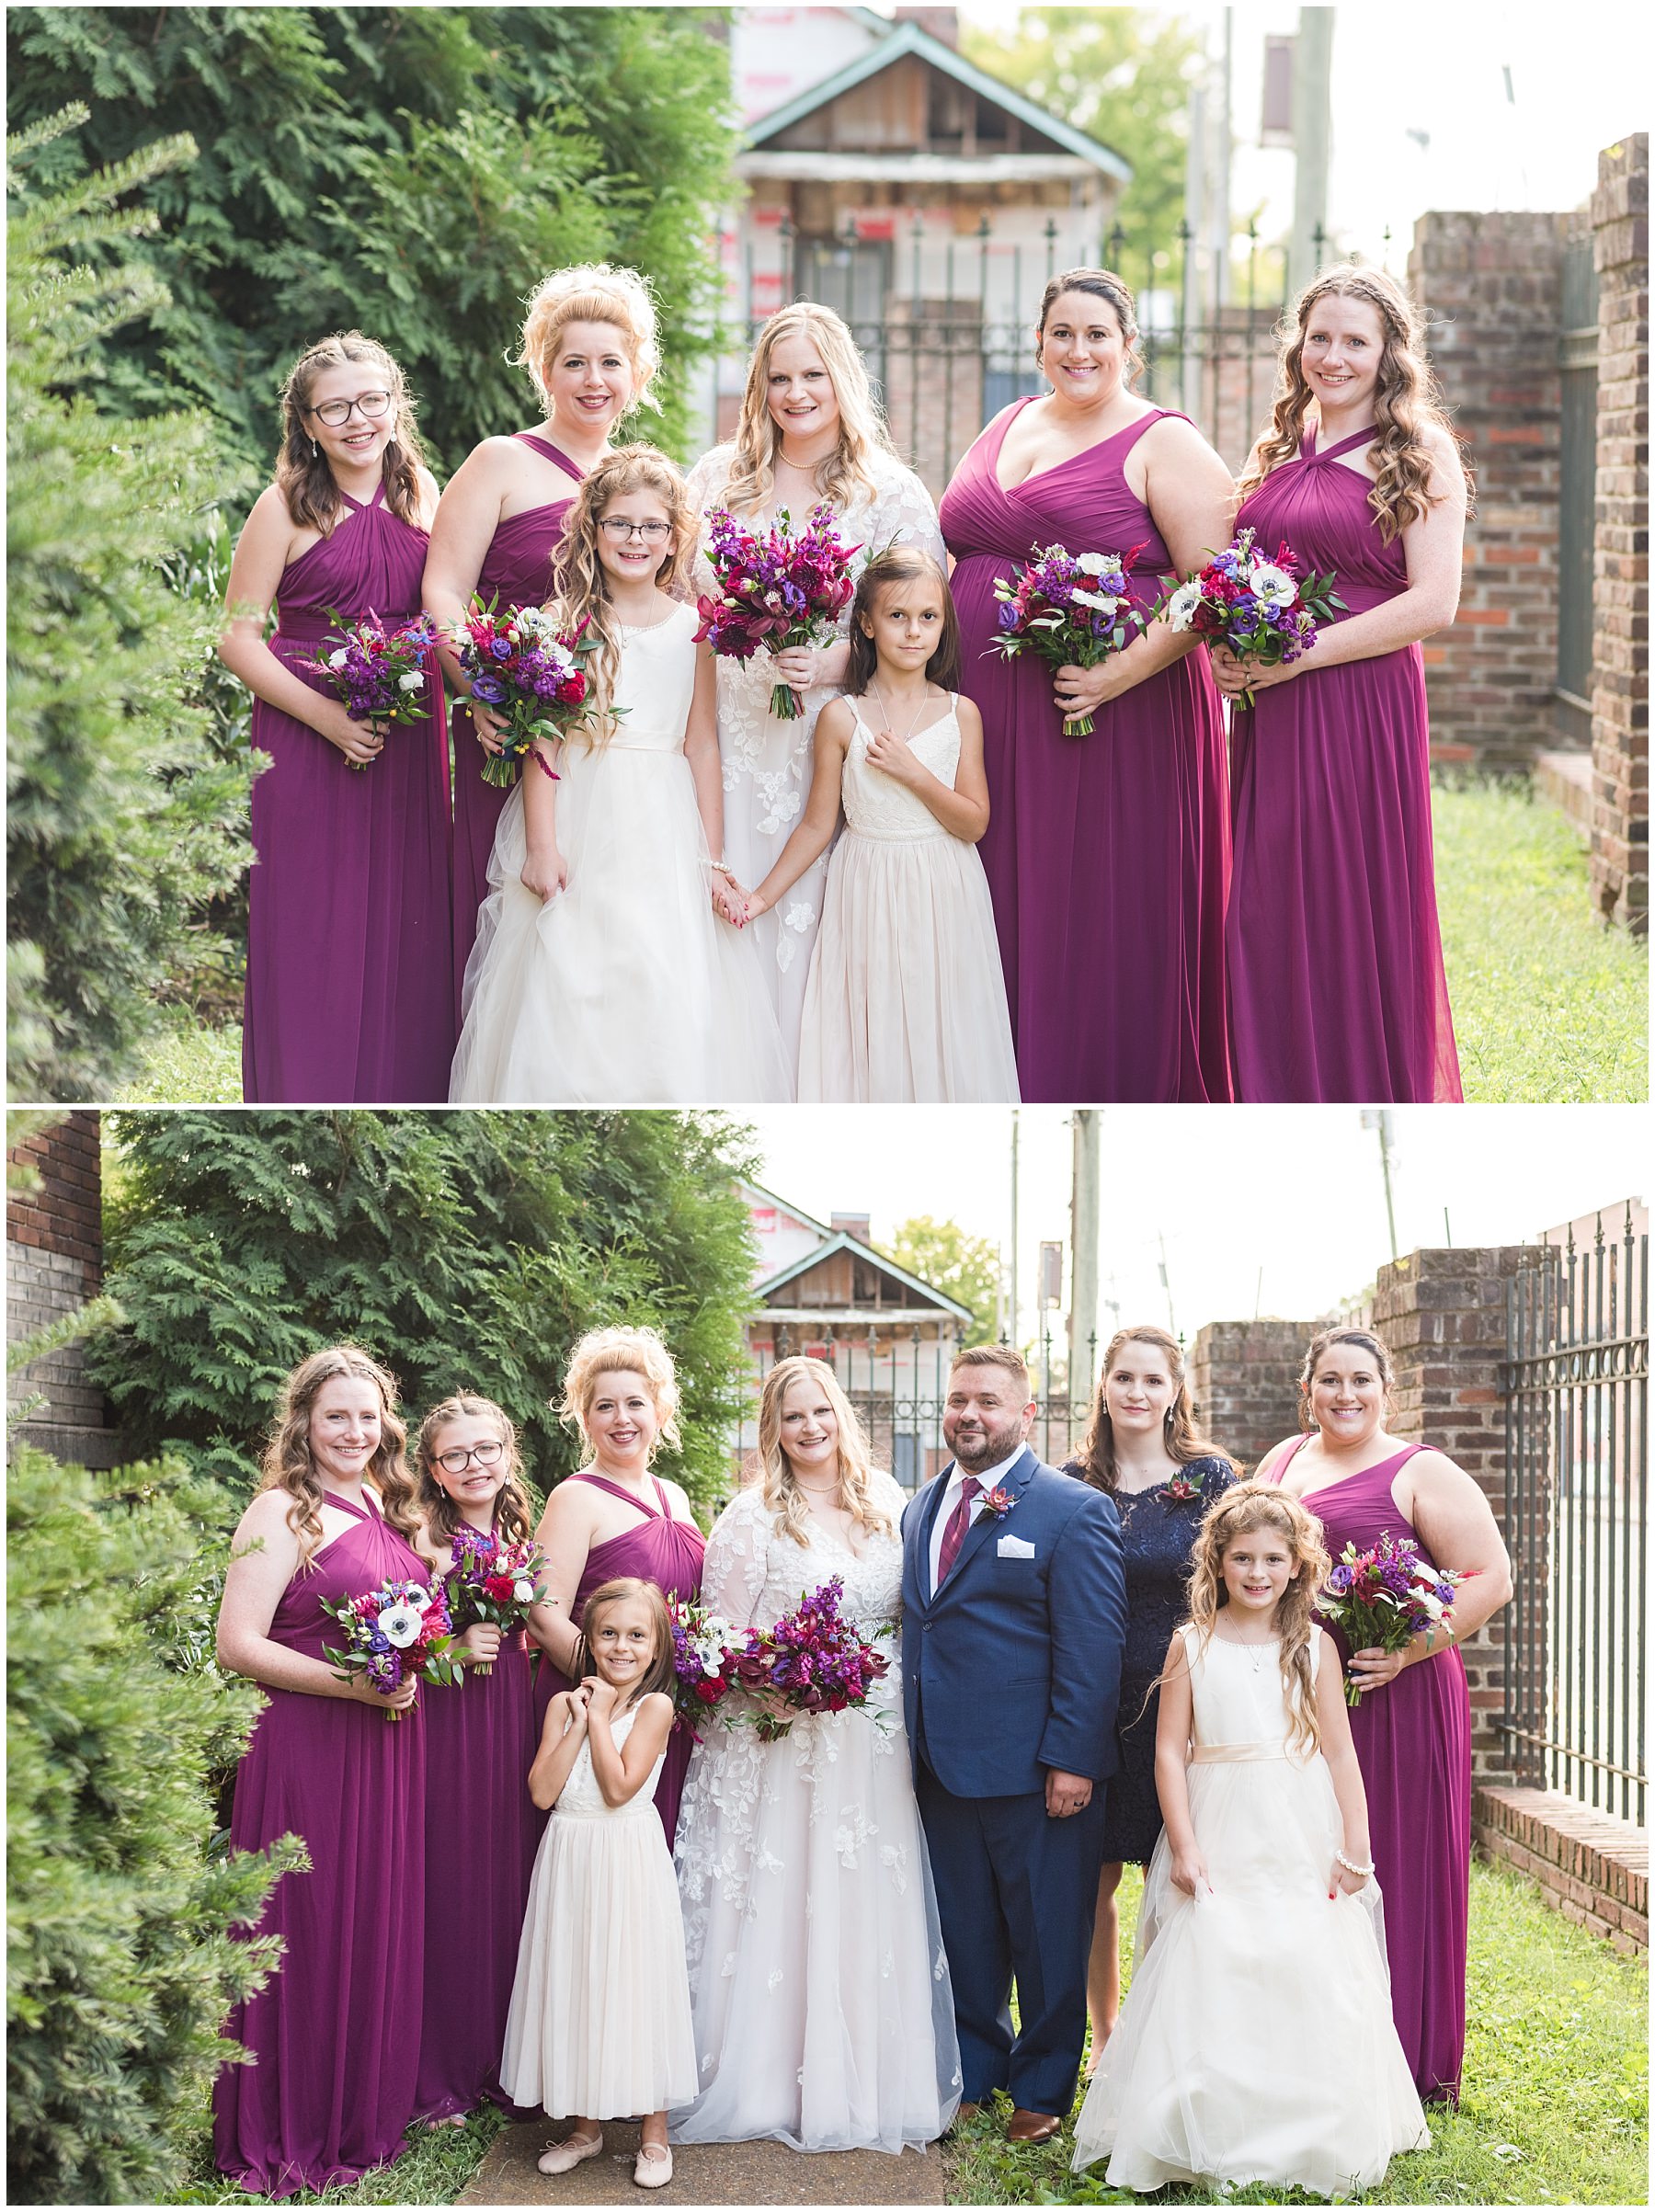 Bridal party photos at Marathon Village wedding in Nashville.